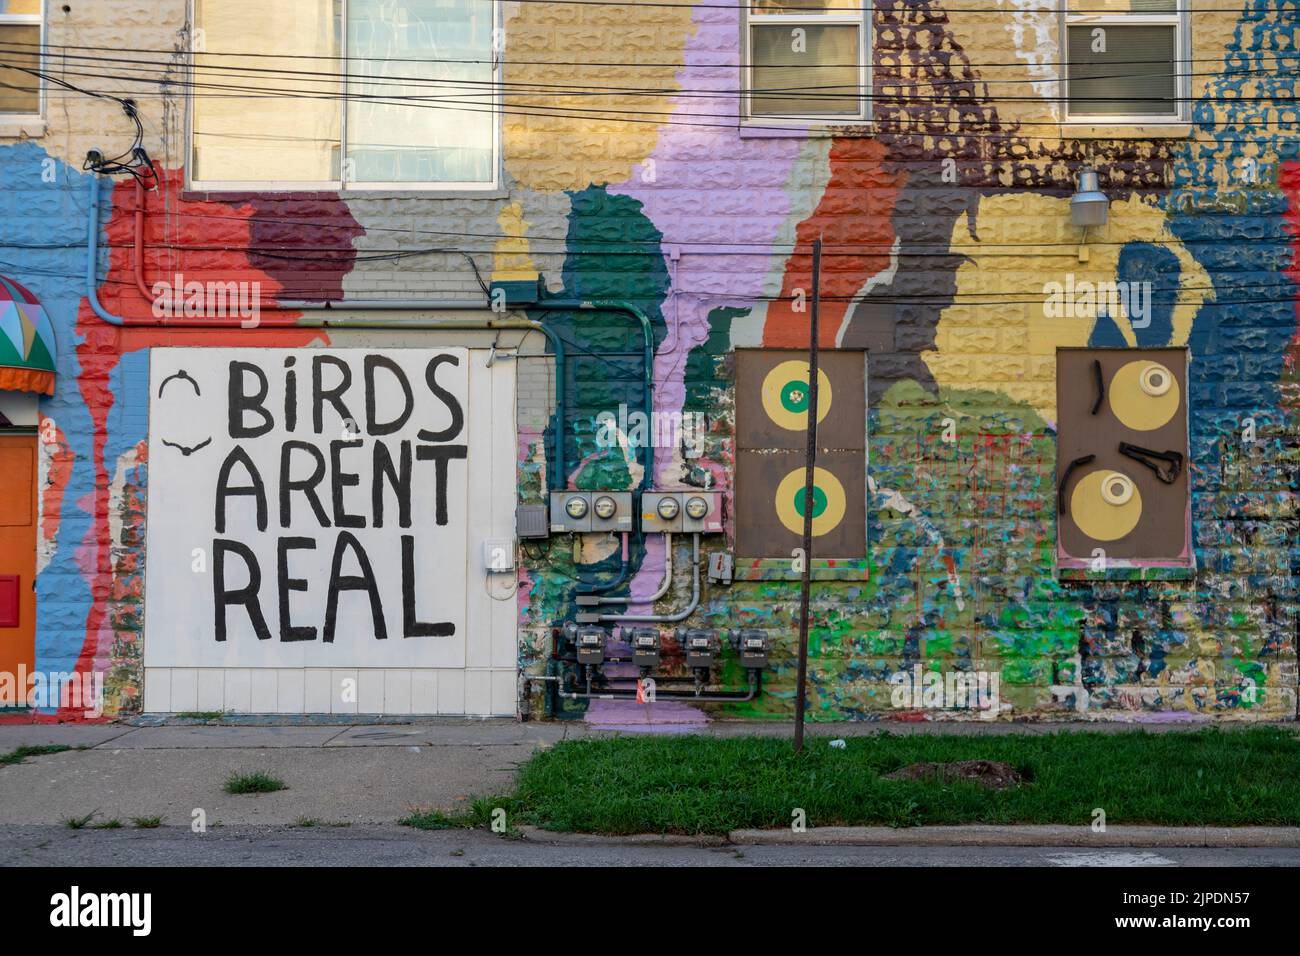 Kalamazoo, Michigan - Un mur peint avec le texte « Birds aren't Real ». Le slogan est une satire populaire des théories conspirationnistes inspirées par Donald Trump. Banque D'Images